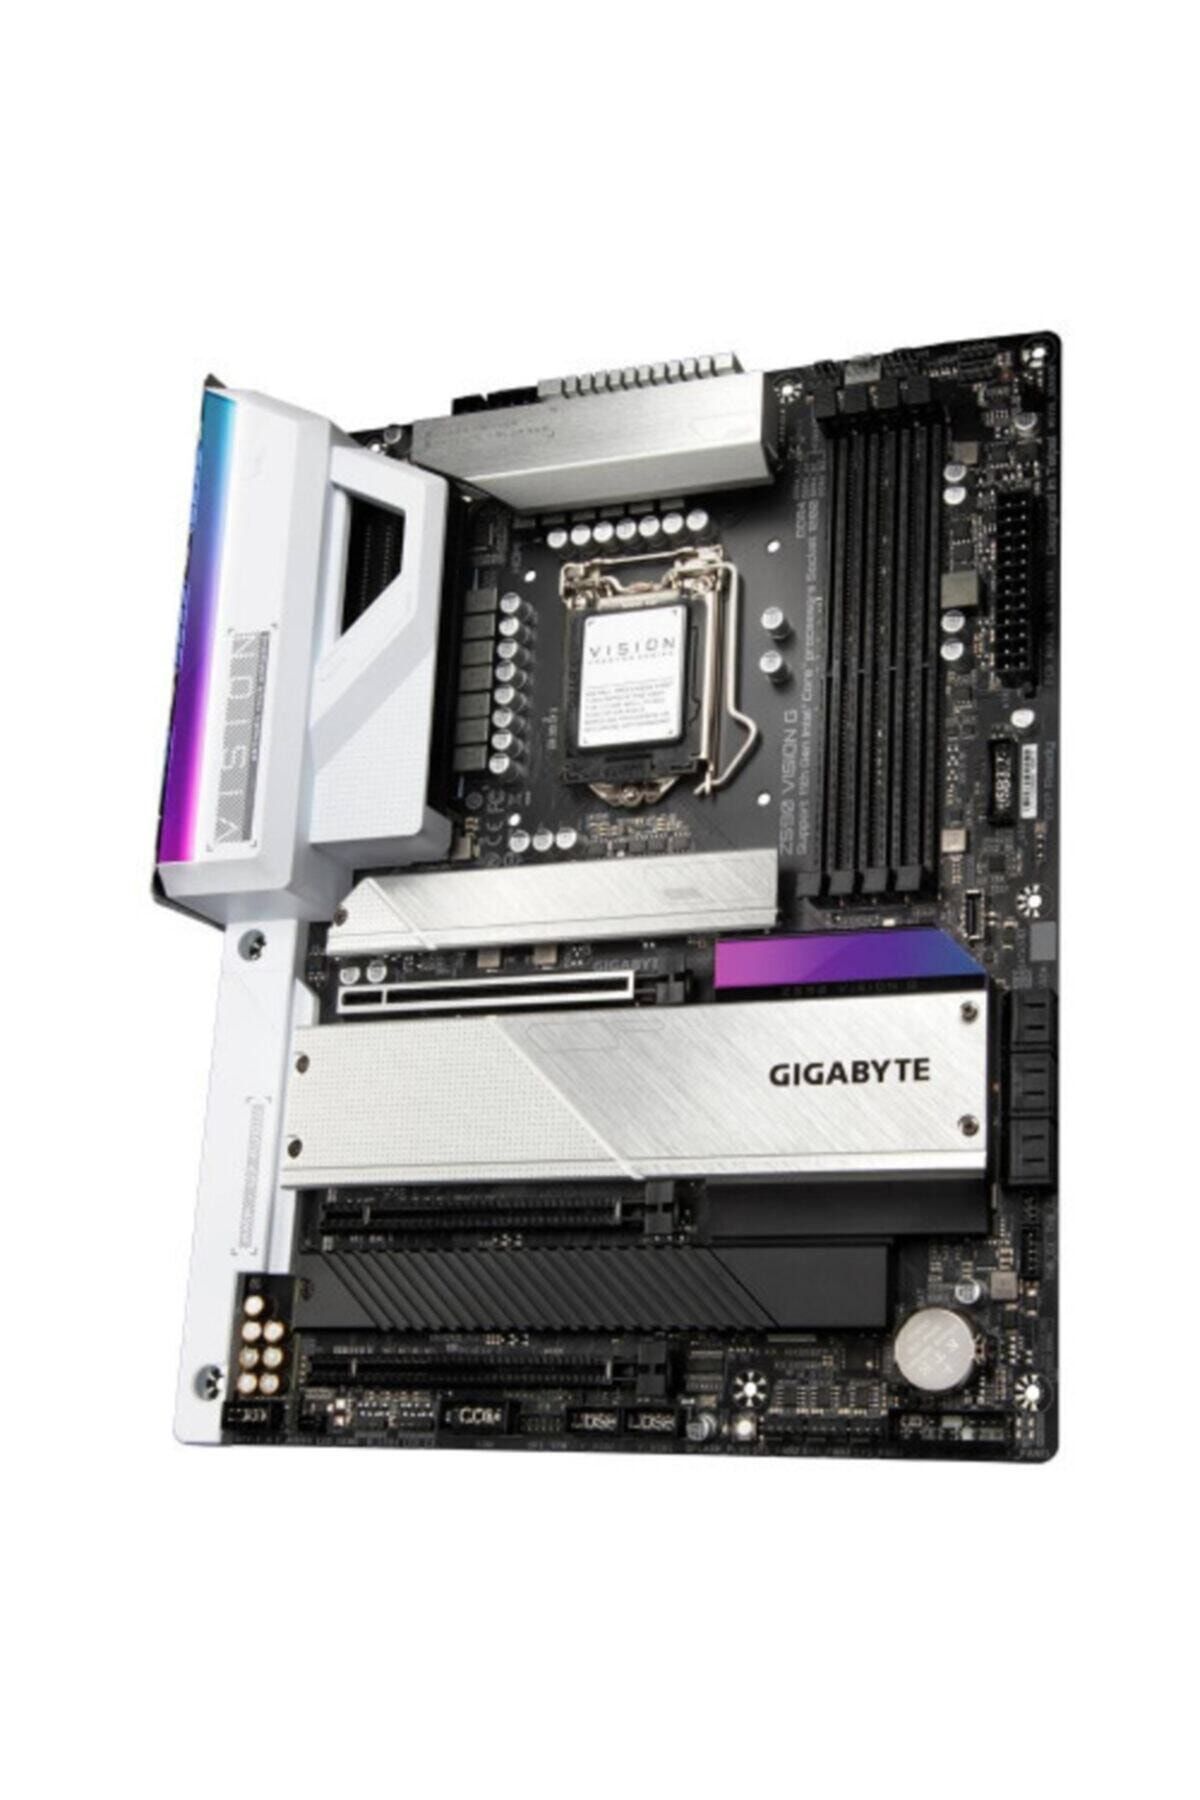 Gigabyte Gıgabyte Z590-vısıon-g Mab Intel Z590 Lga1200 Ddr4 2666mhz Hdmı